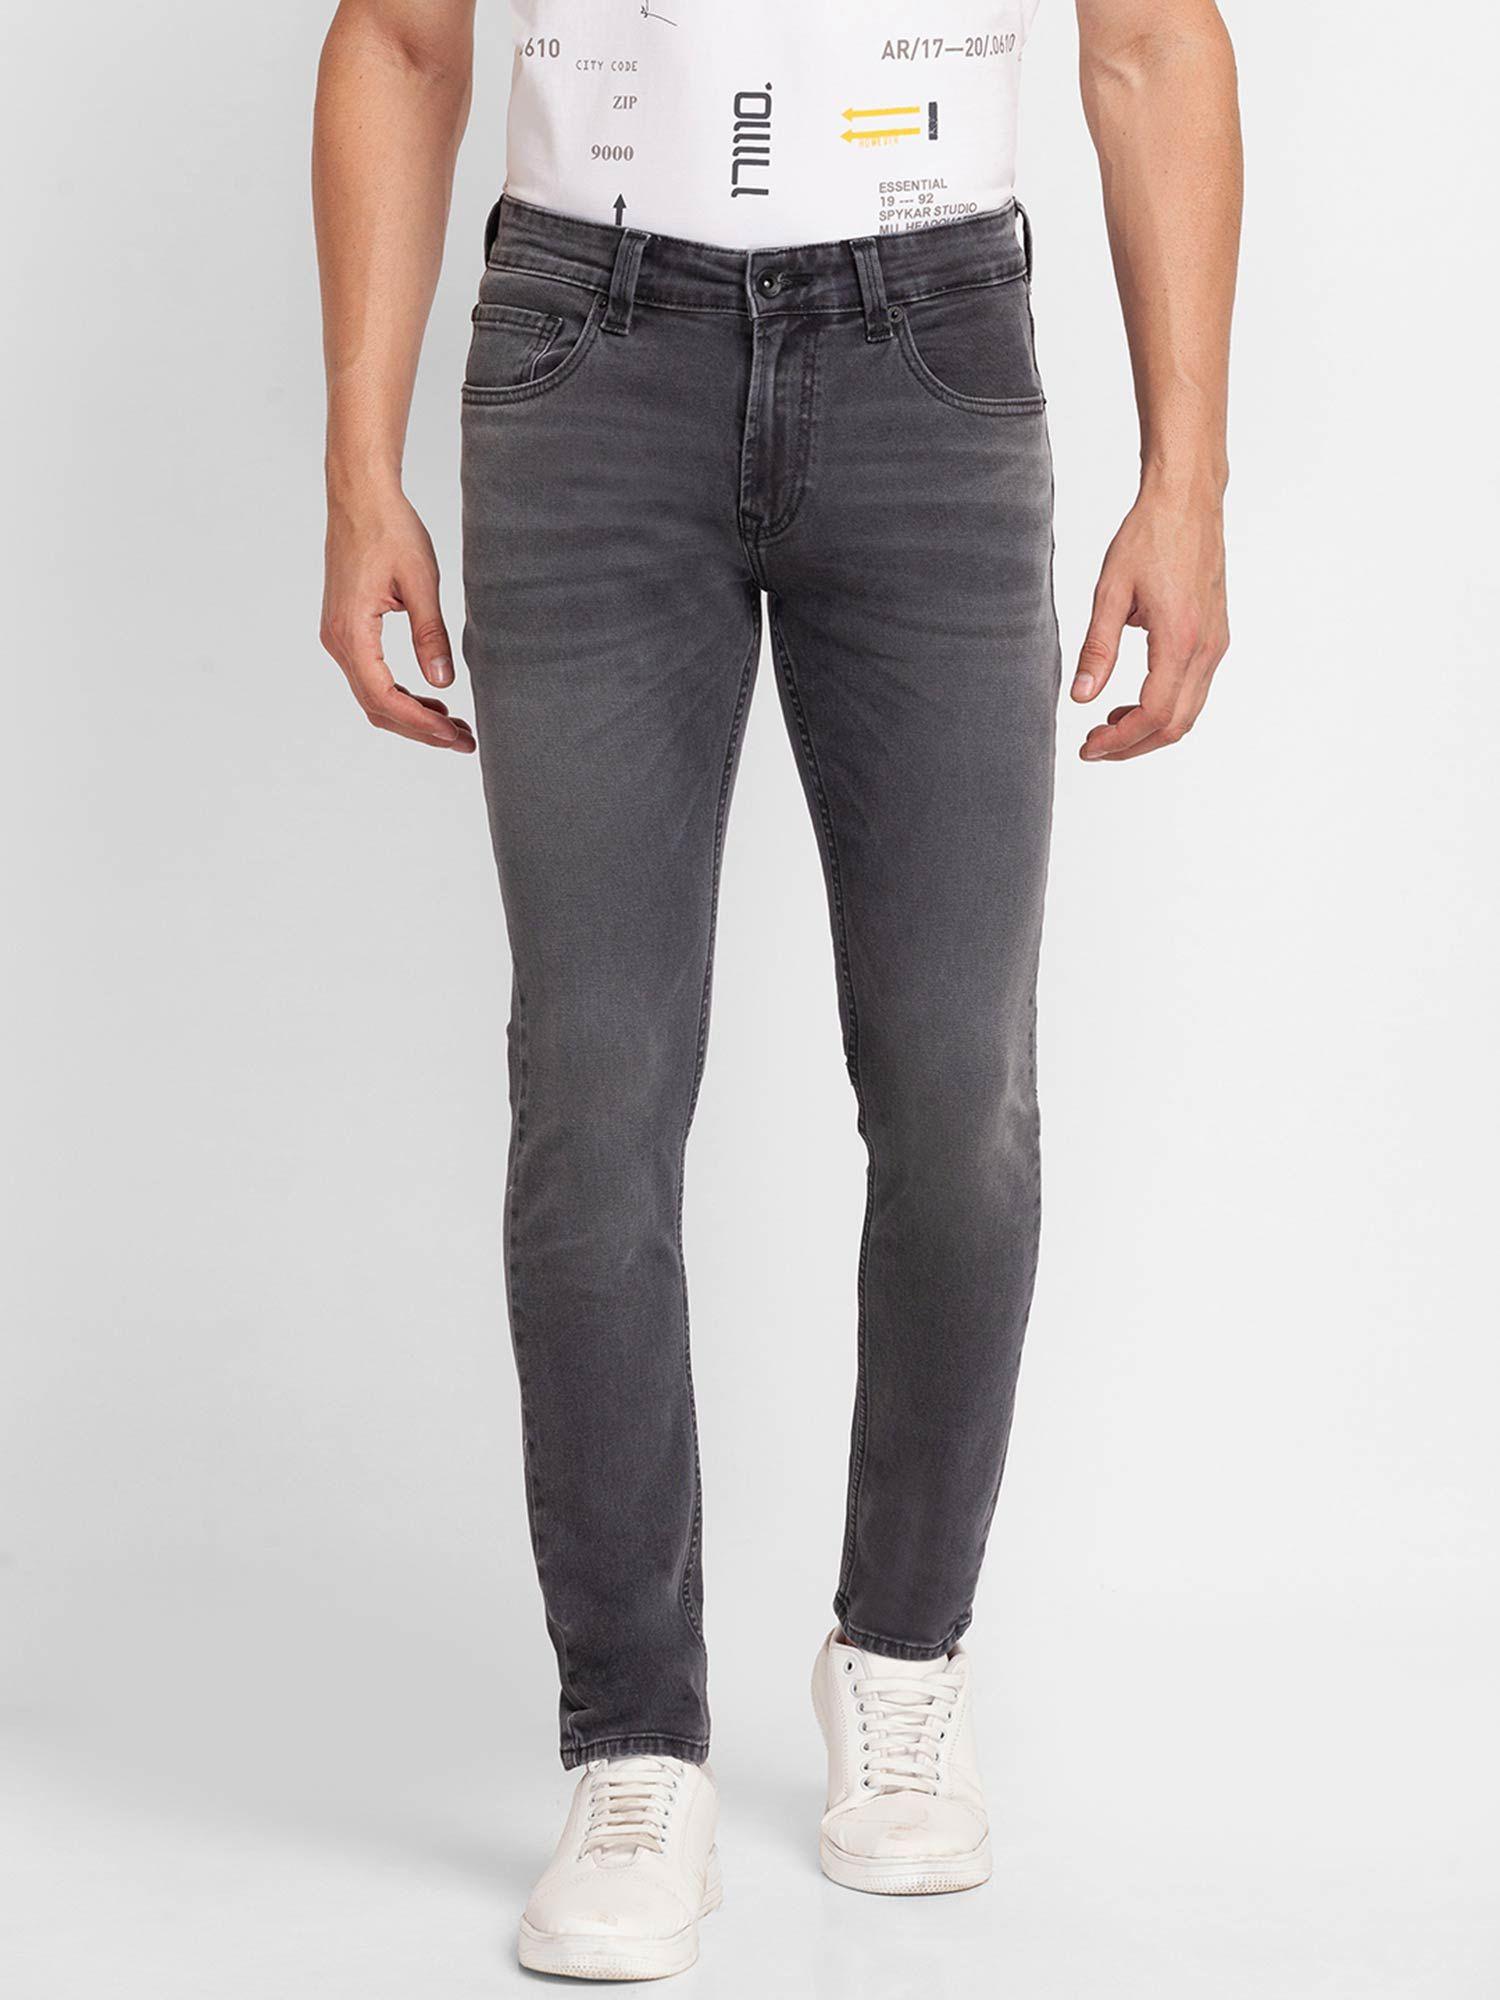 grey-cotton-super-slim-fit-tapered-length-jeans-for-men-(super-skinny)